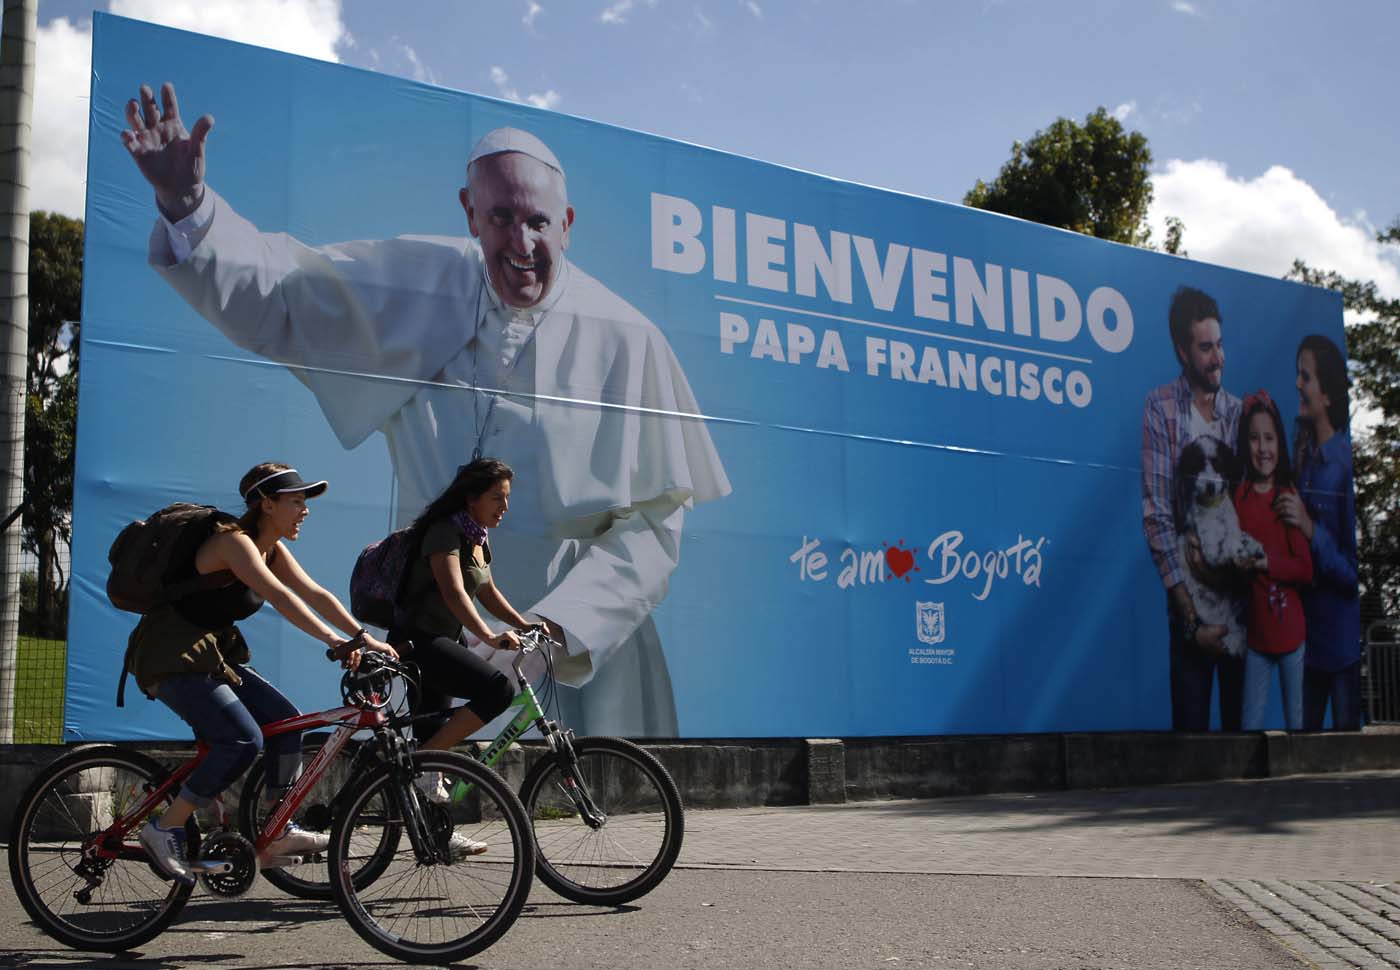 La oportunidad que perdió Nicolás Maduro con el papa Francisco, por Juan Carlos Zapata